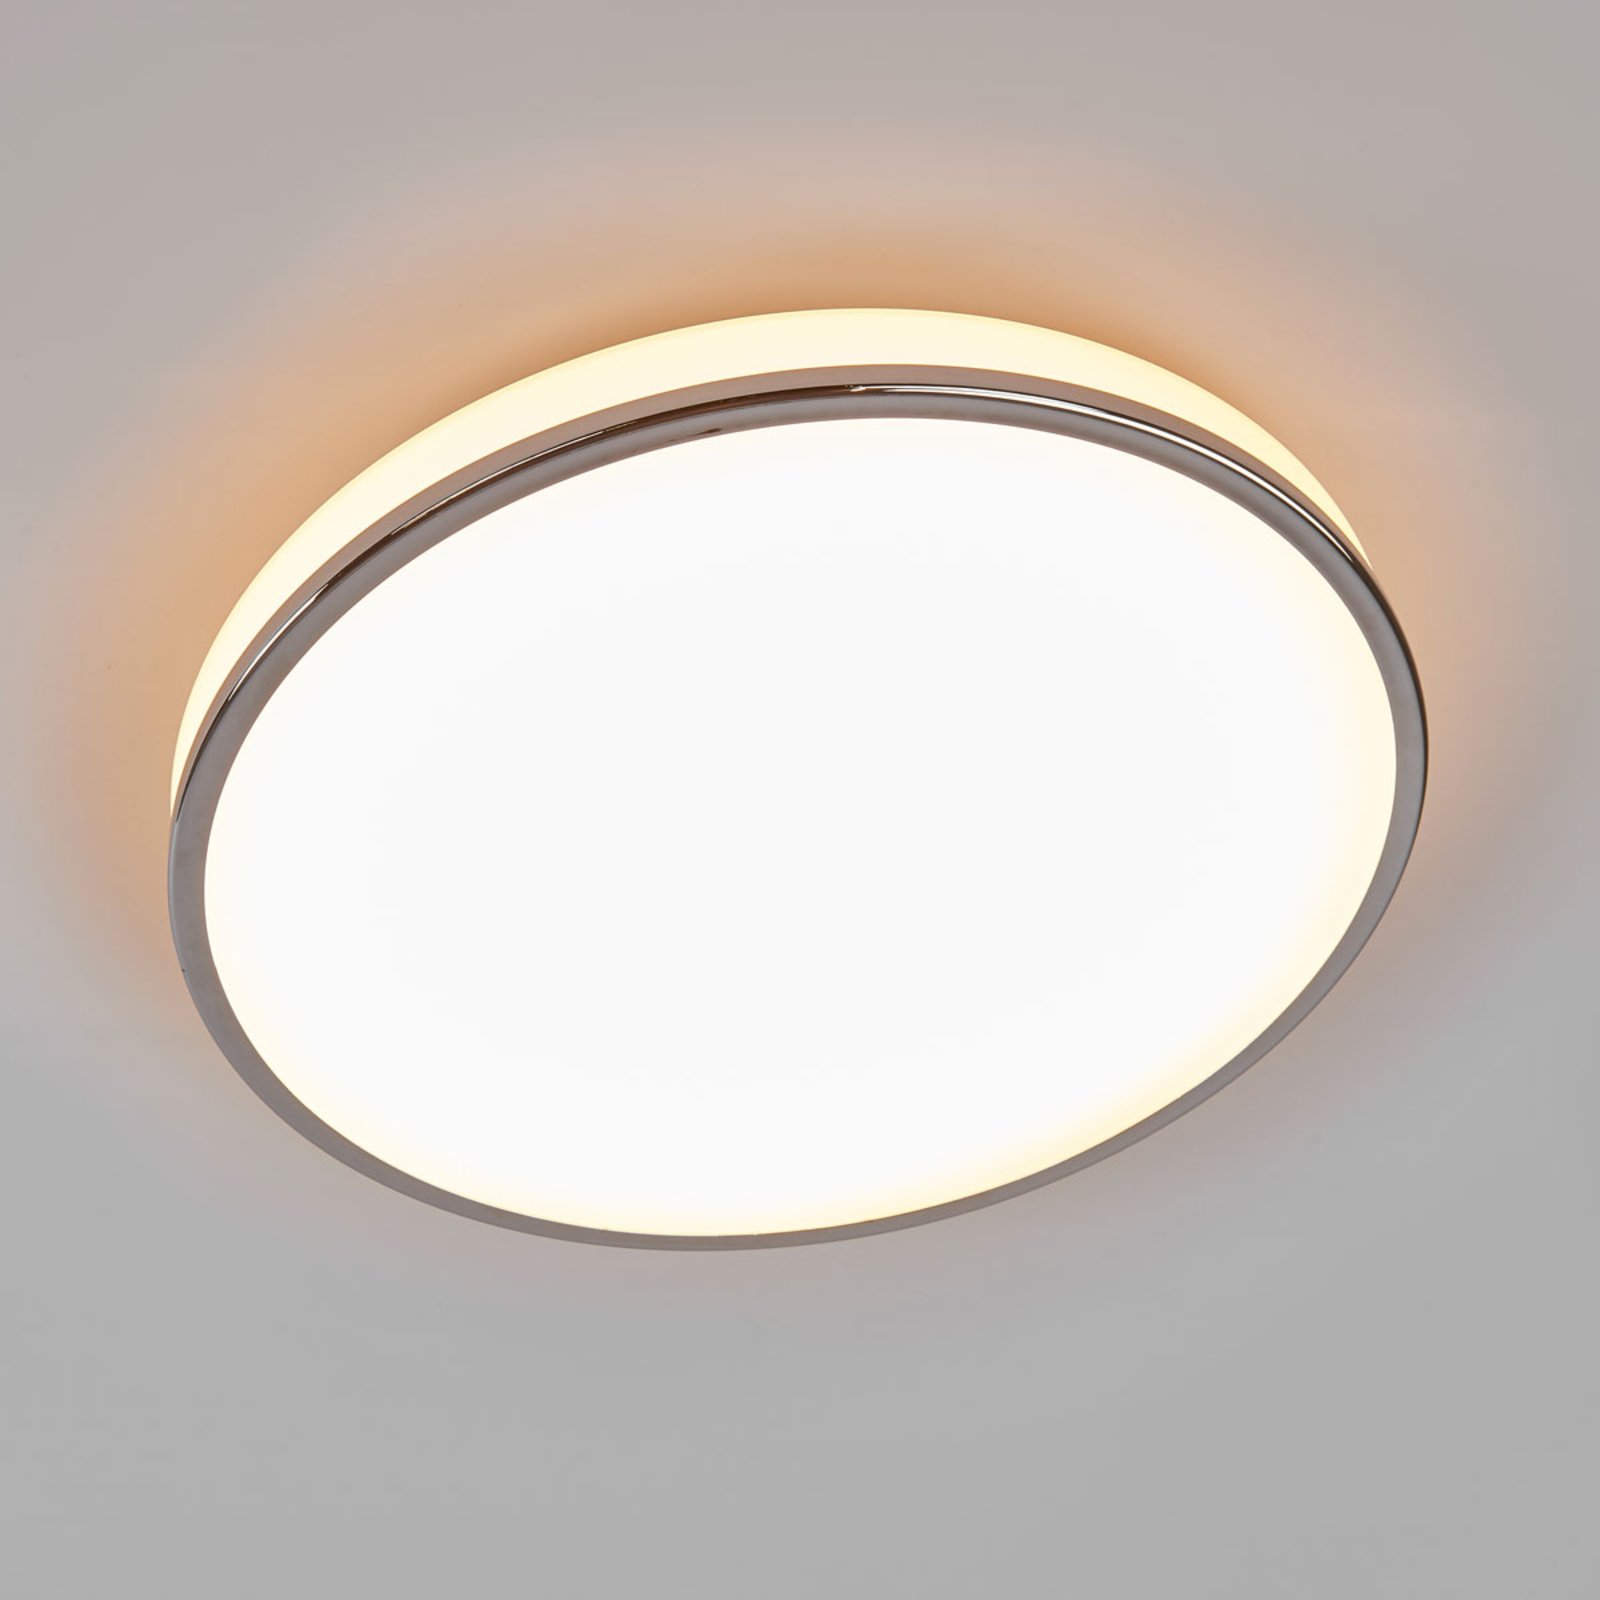 Lampa łazienkowa LED Lyss, duża moc światła